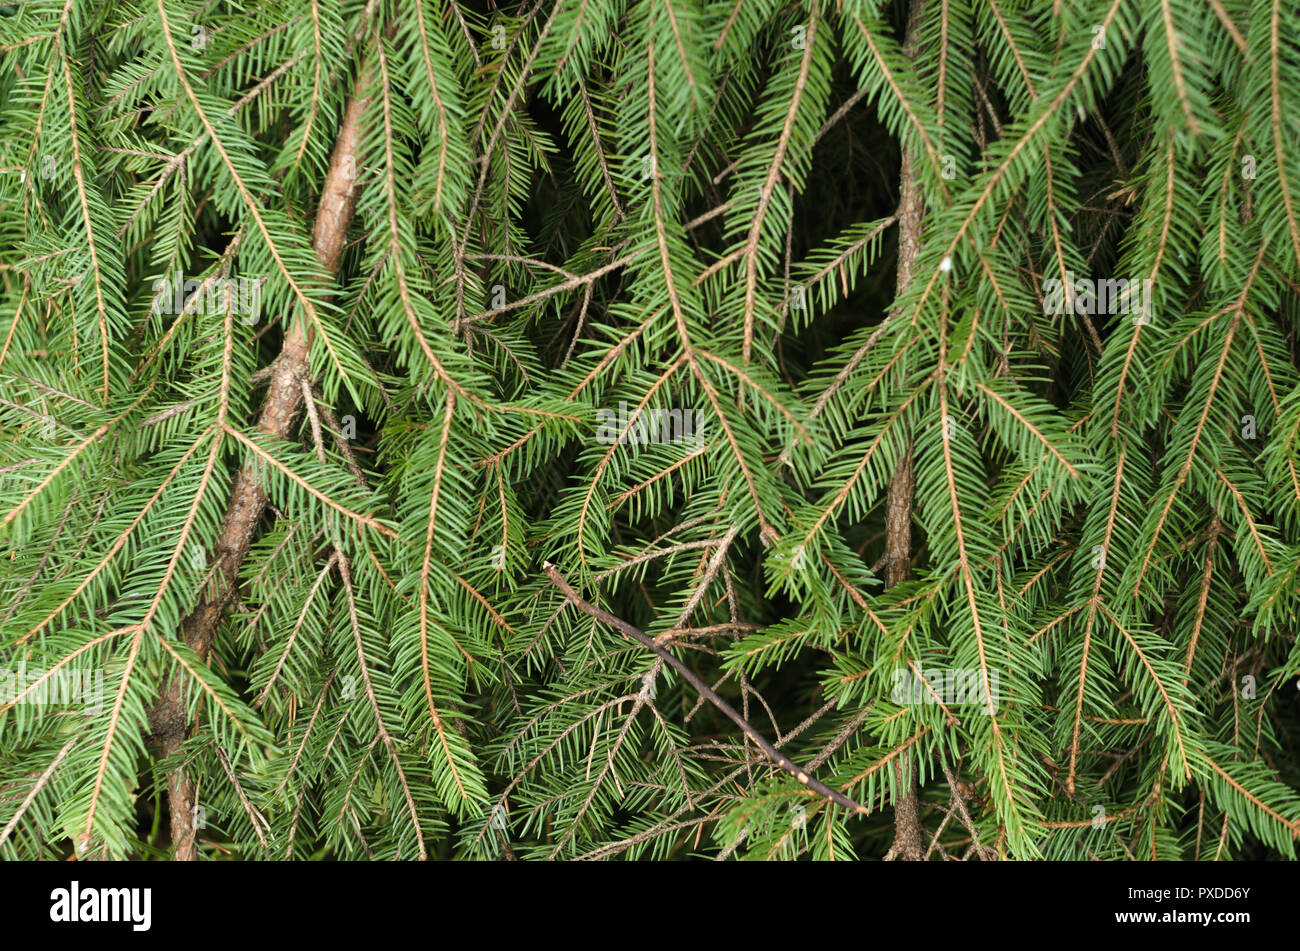 Foliage of Norway spruce. Stock Photo